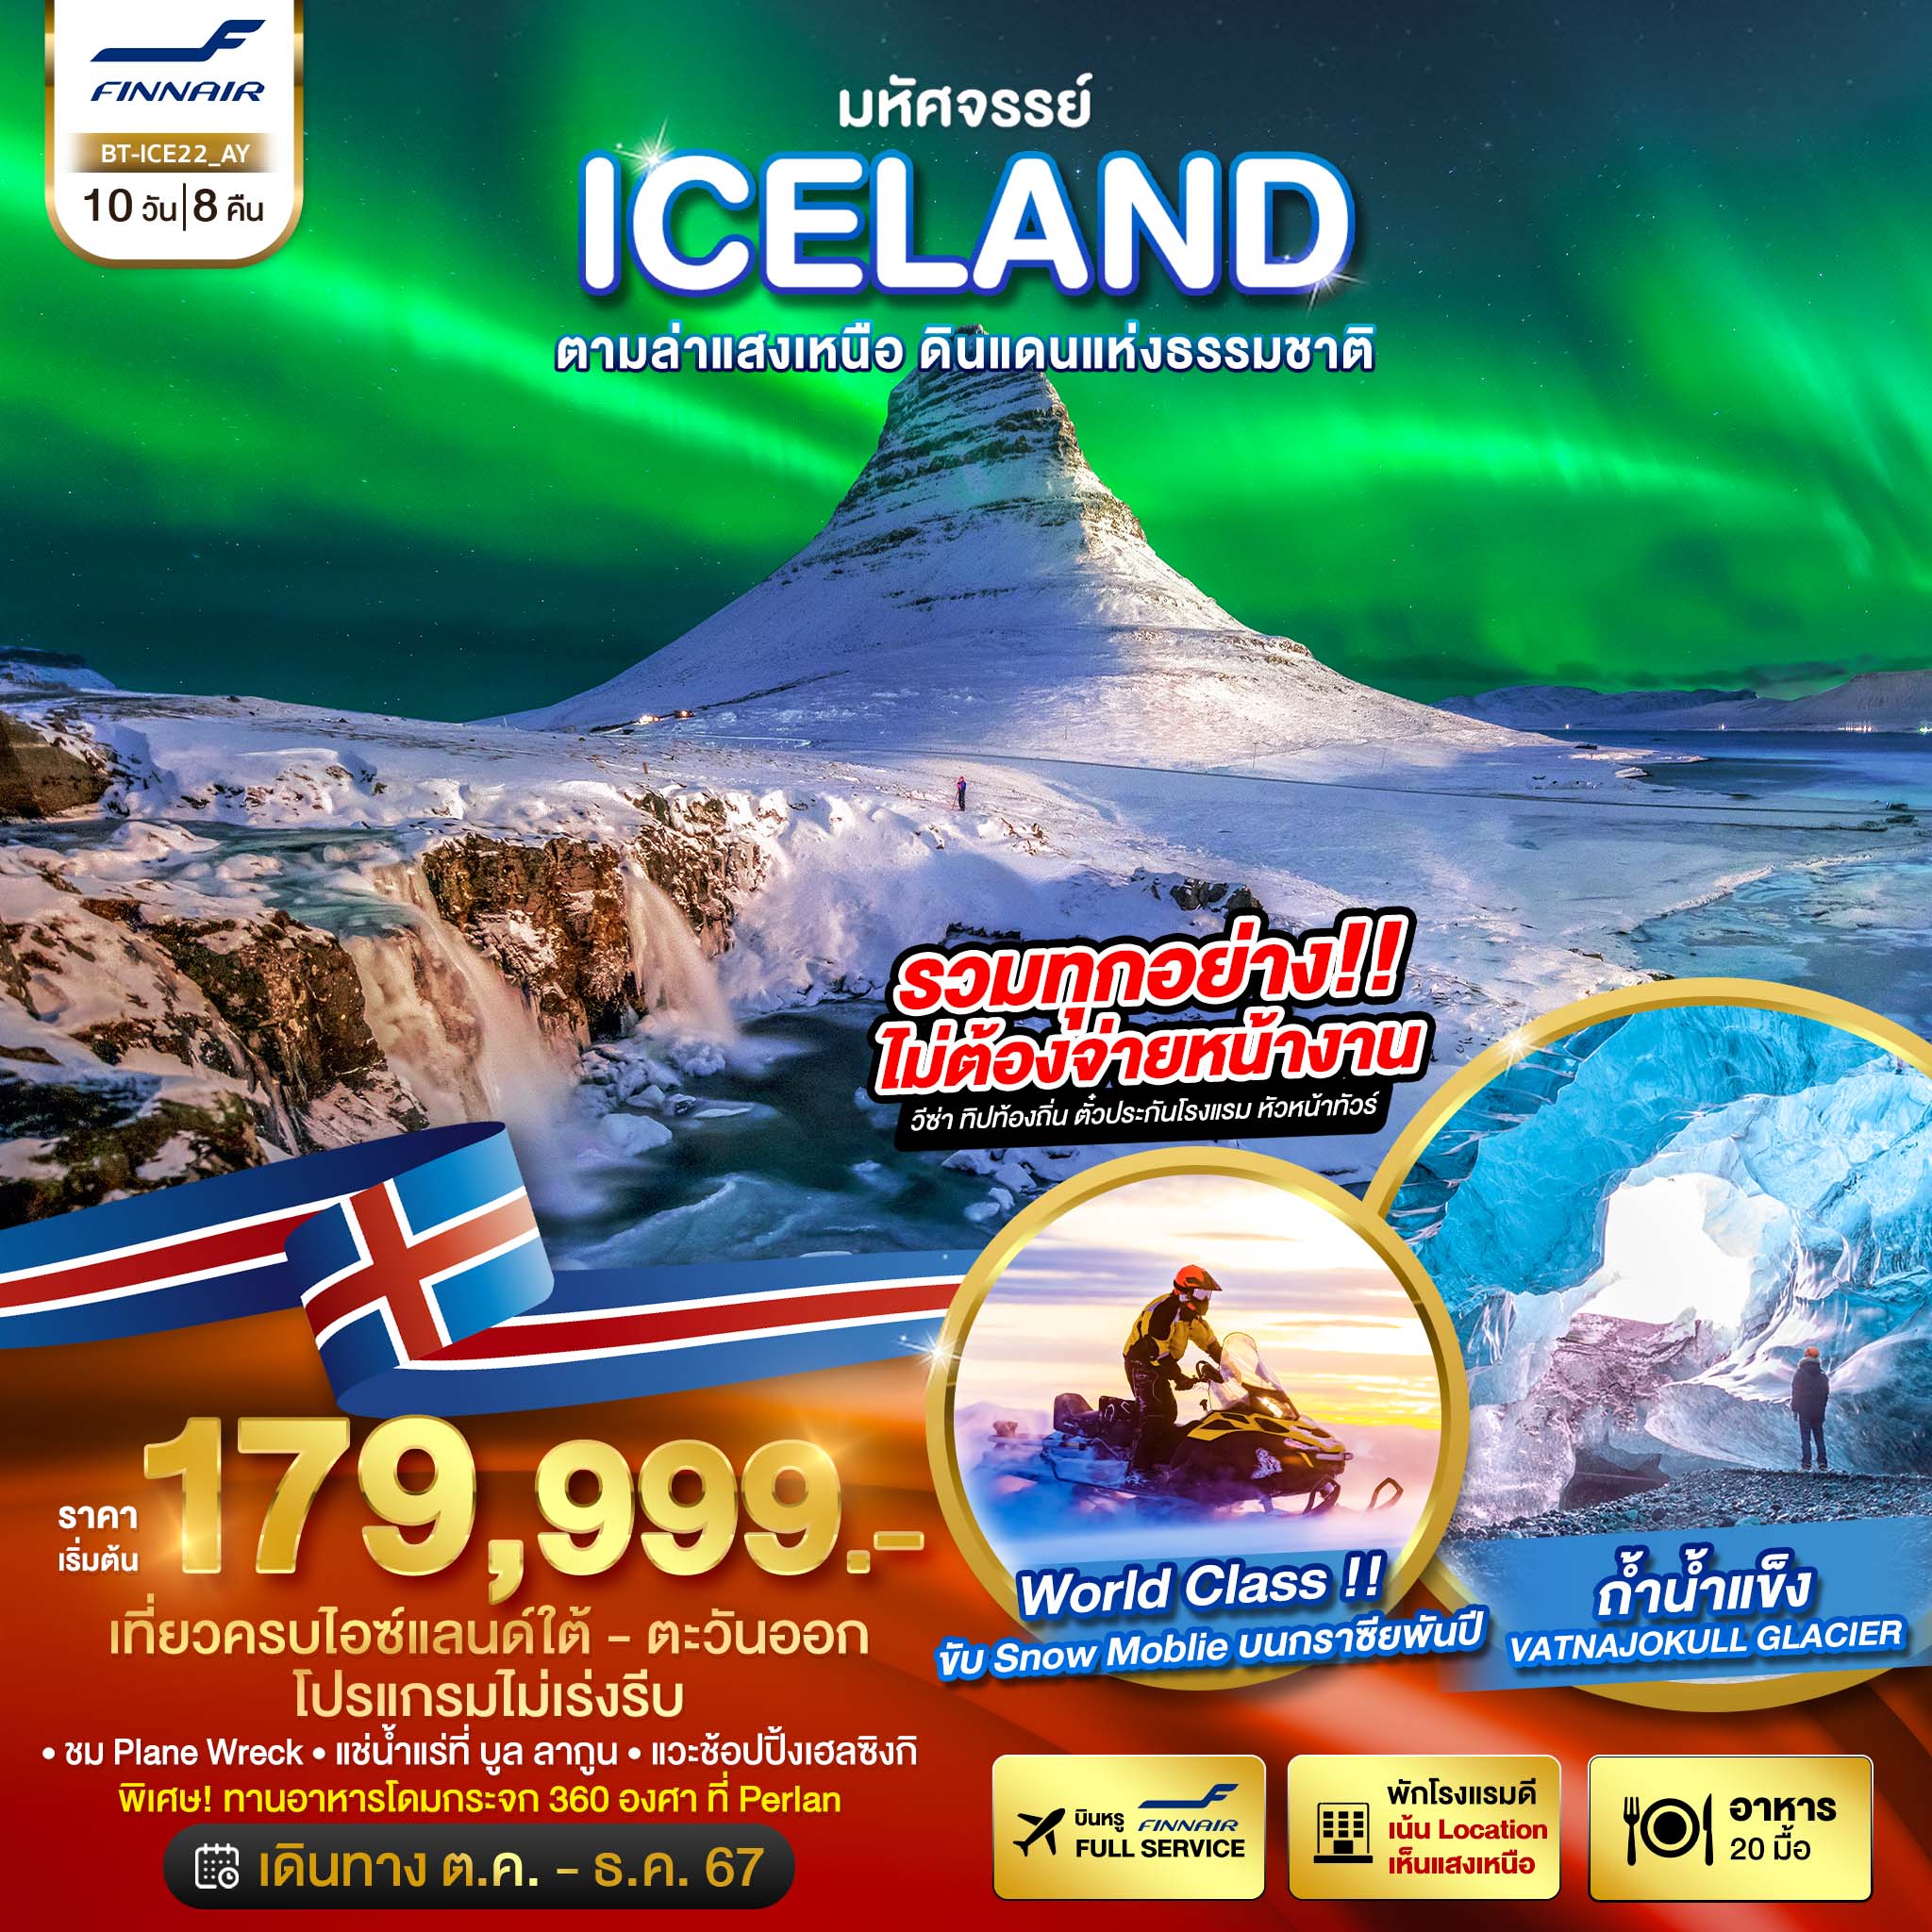 มหัศจรรย์ ICELAND ตามล่าแสงเหนือ ดินแดนแห่งธรรมชาติ 10วัน 8คืน by Finnair